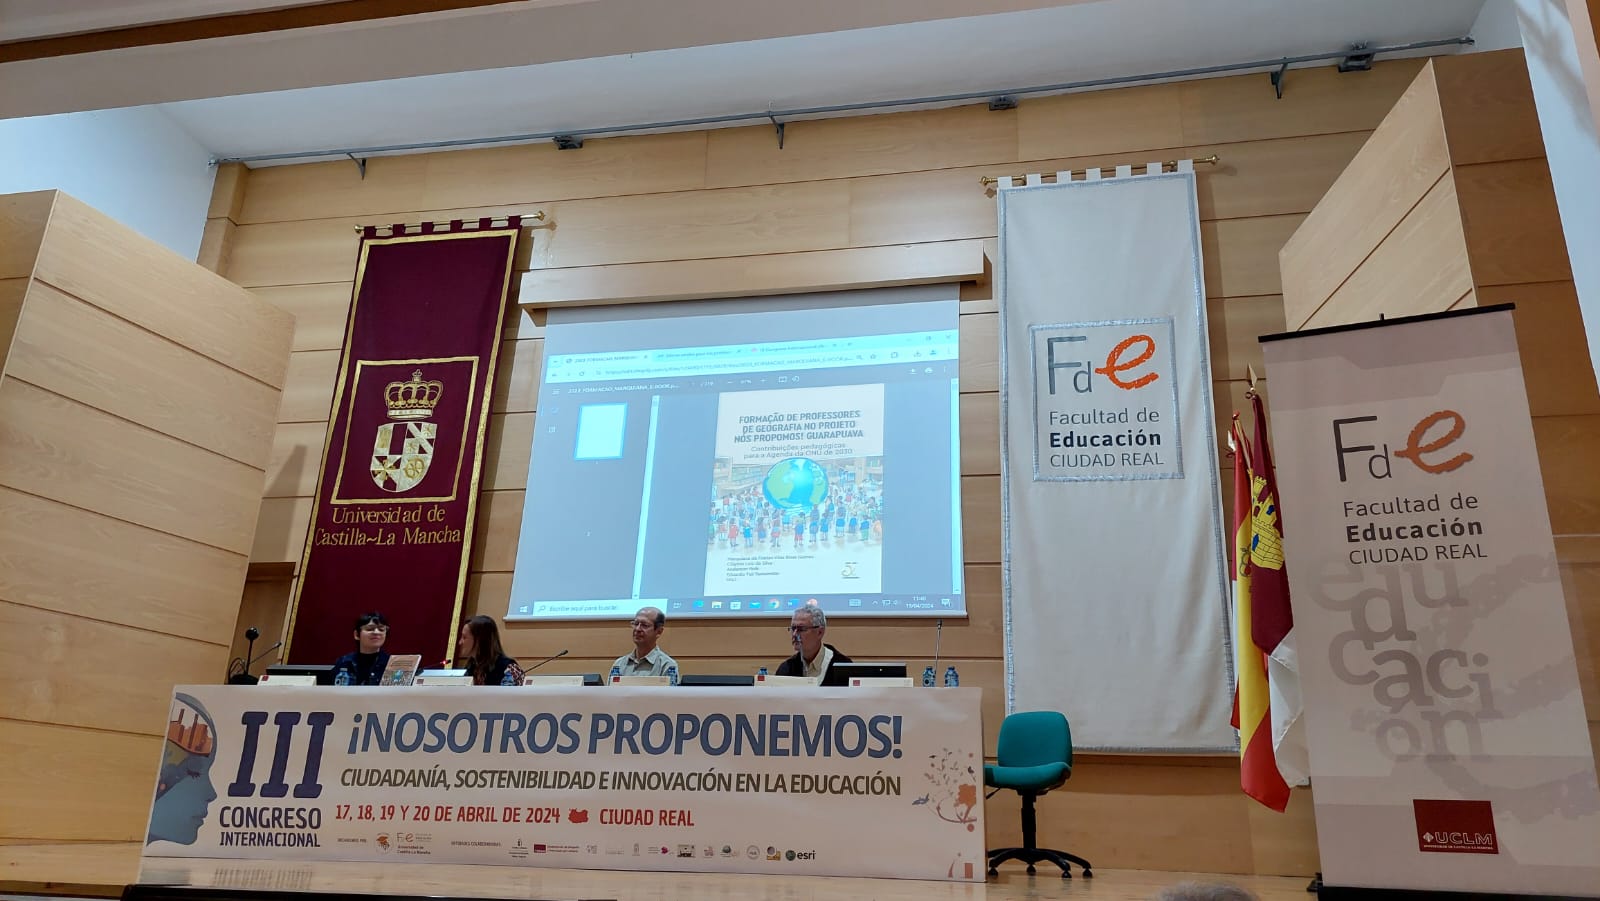 Docente da Unicentro participa do 3º Congresso Internacional “Nós Propomos!” na Espanha